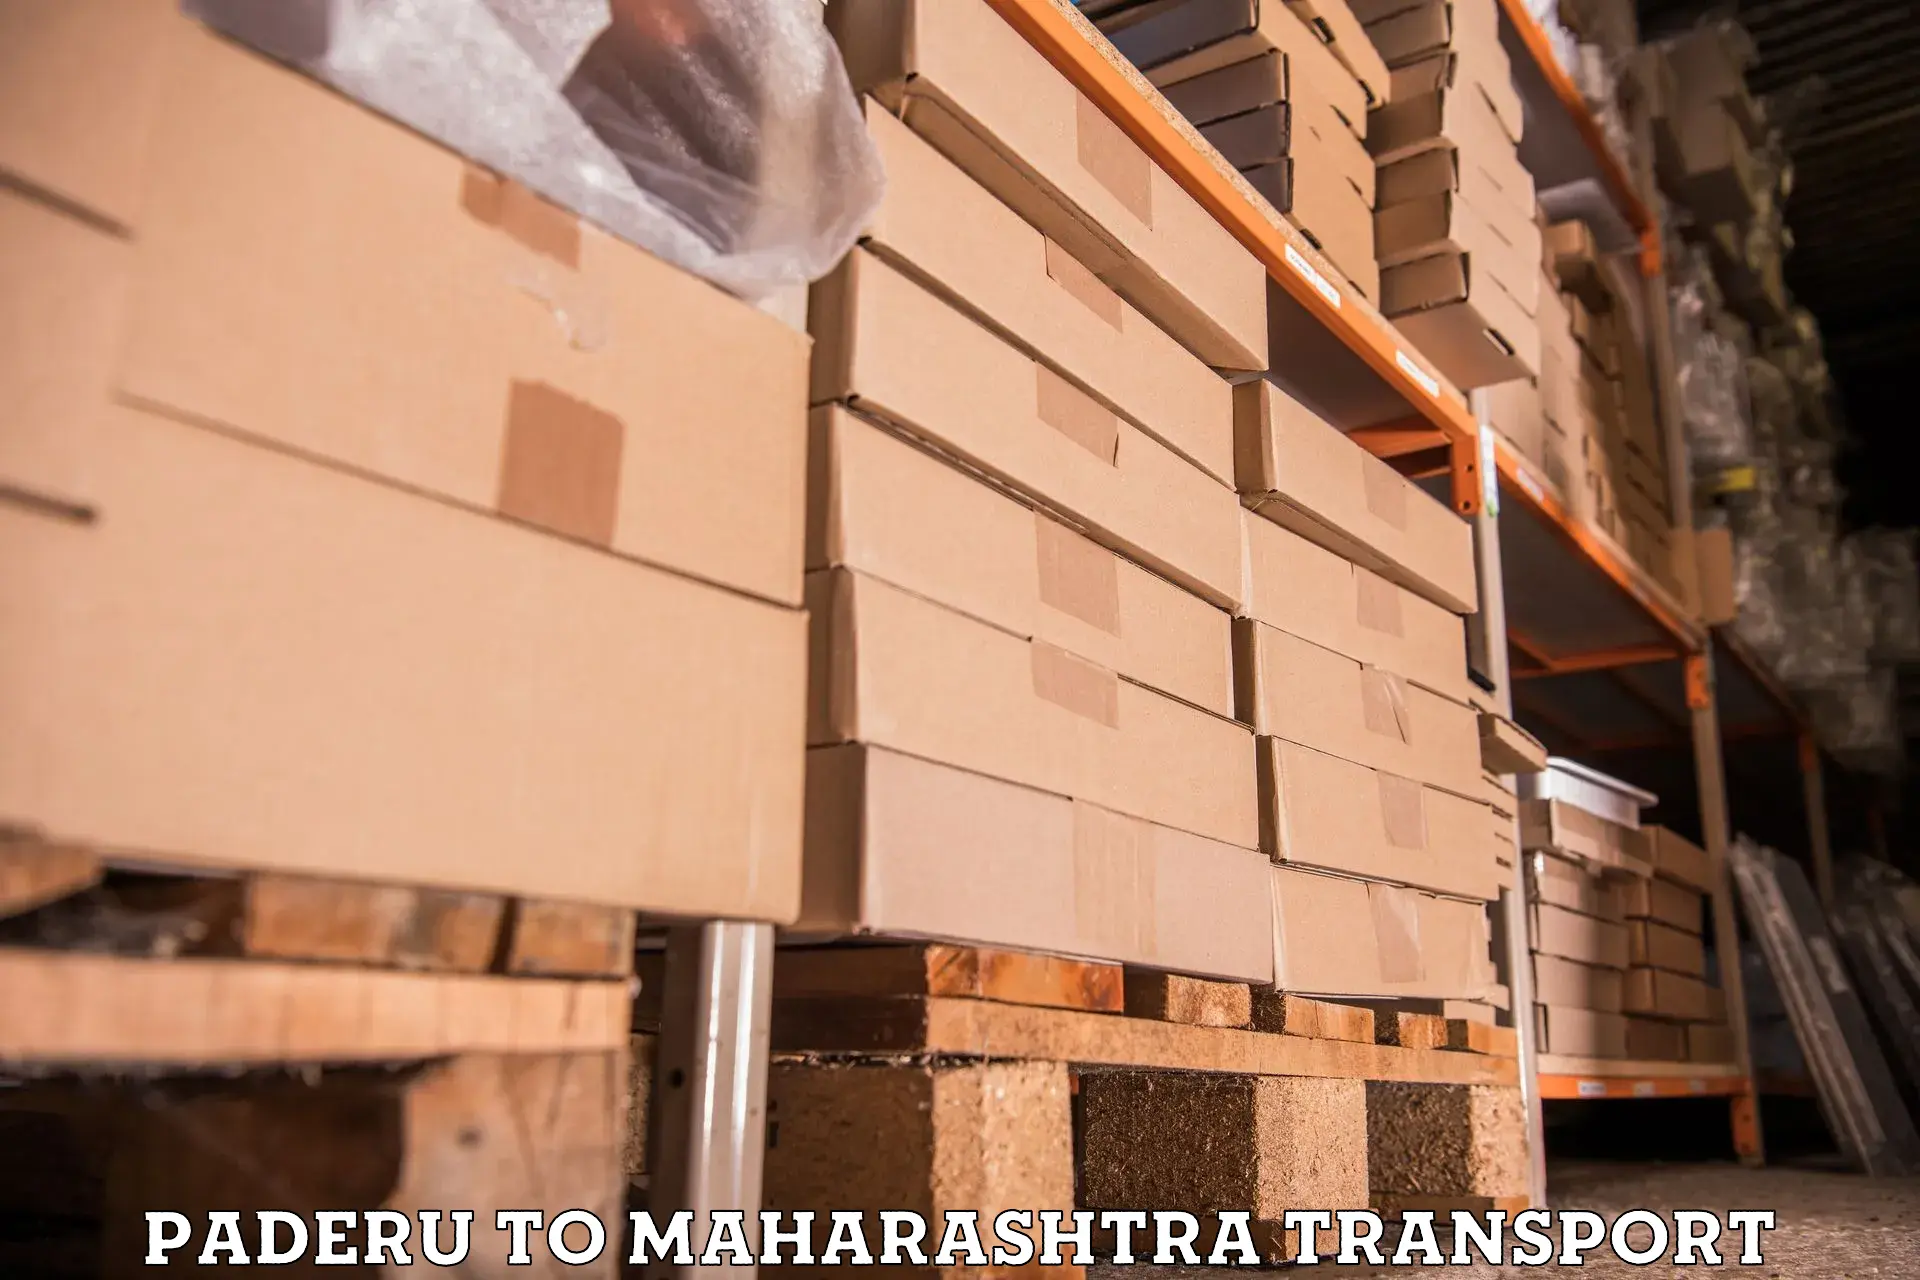 Lorry transport service Paderu to Mahabaleshwar